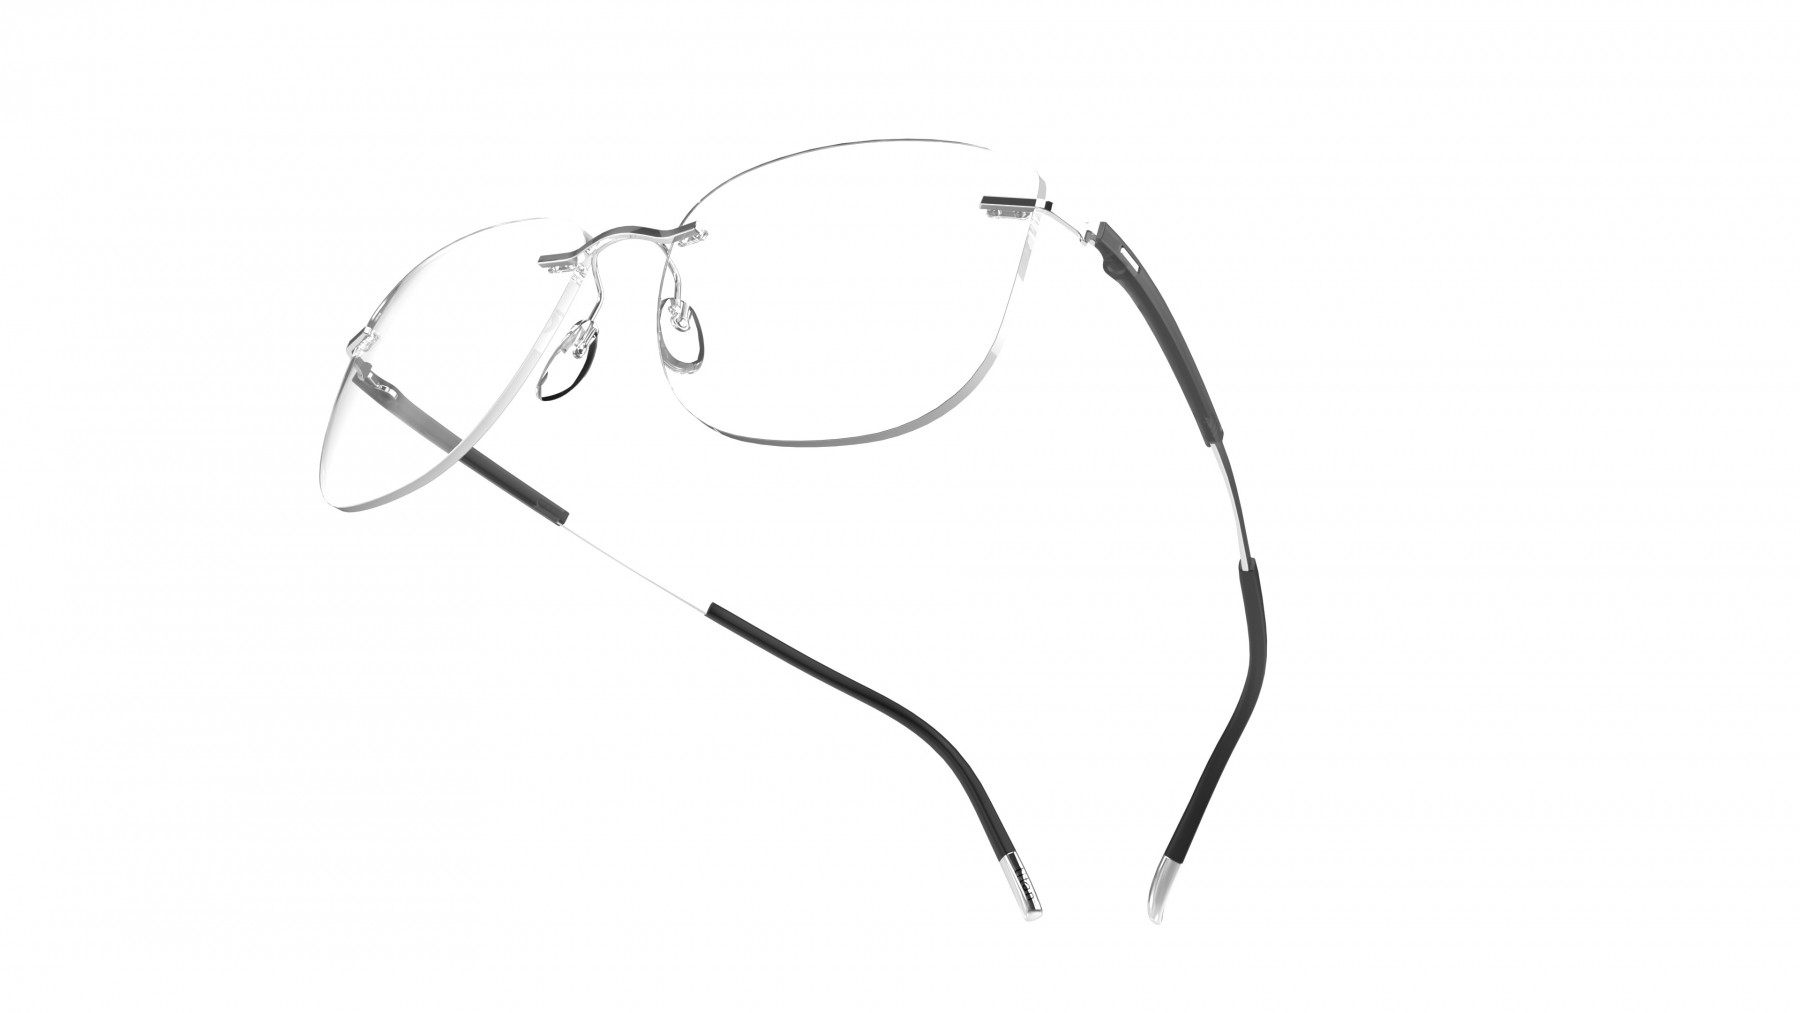 SIlhouette 5540 JF 7110 - Oculos de Grau